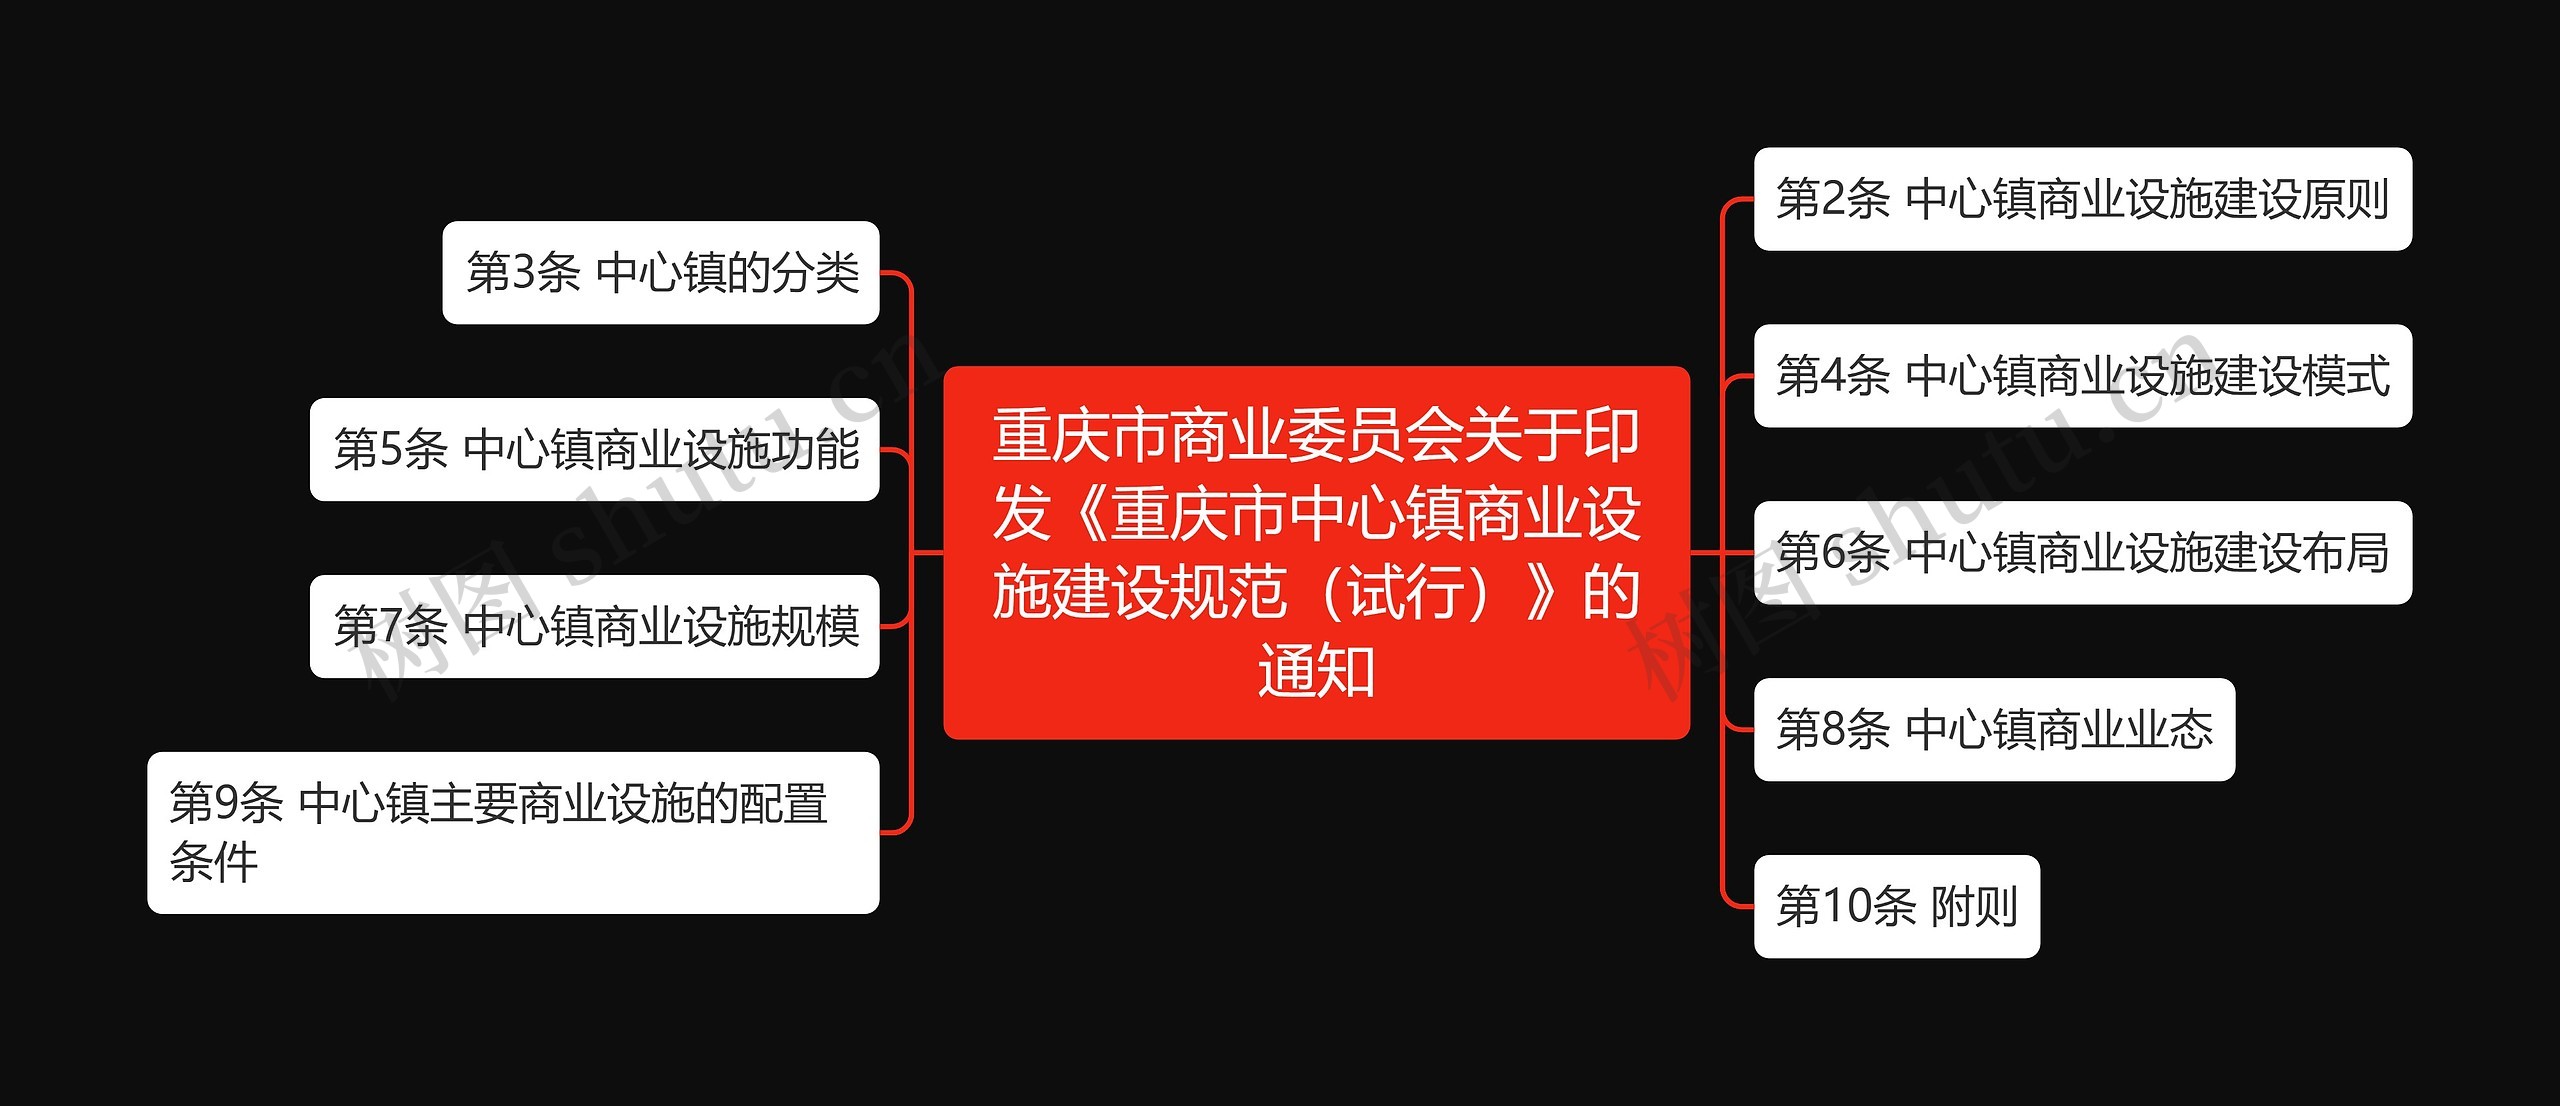 重庆市商业委员会关于印发《重庆市中心镇商业设施建设规范（试行）》的通知思维导图